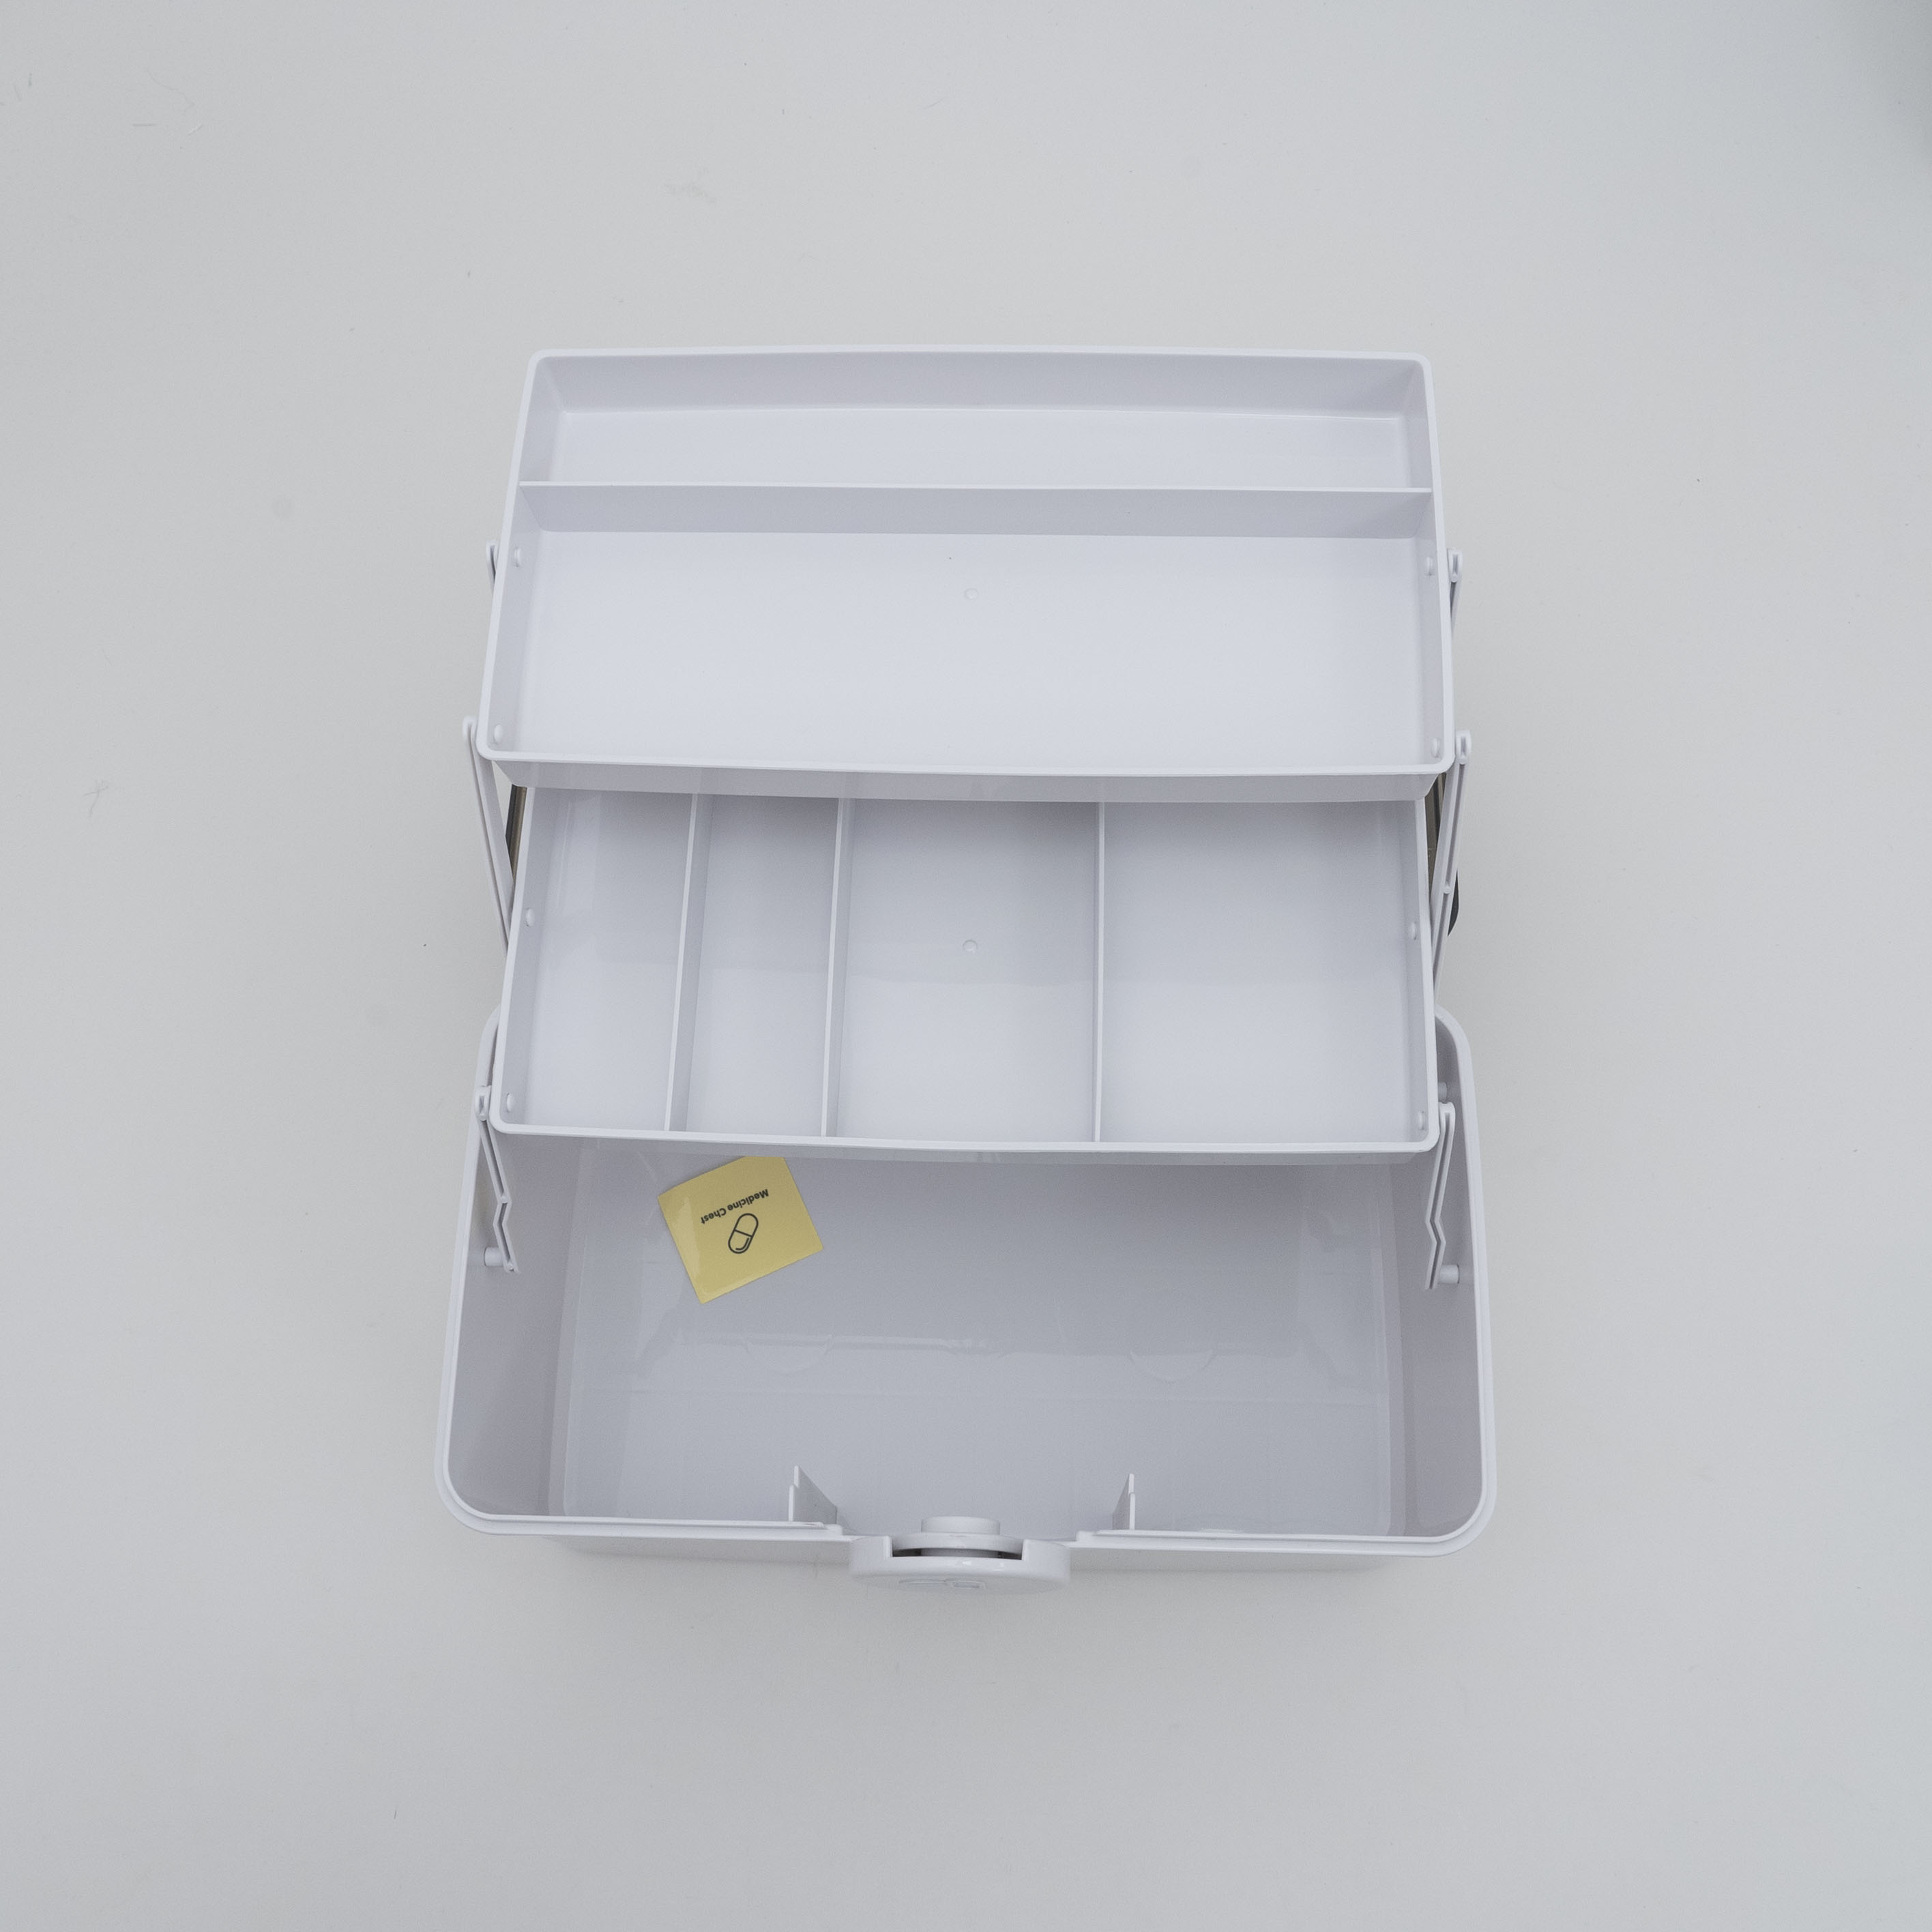 救急箱｜3段式の折り畳みボックスのため沢山の物を綺麗に収納することが可能です。|undefined